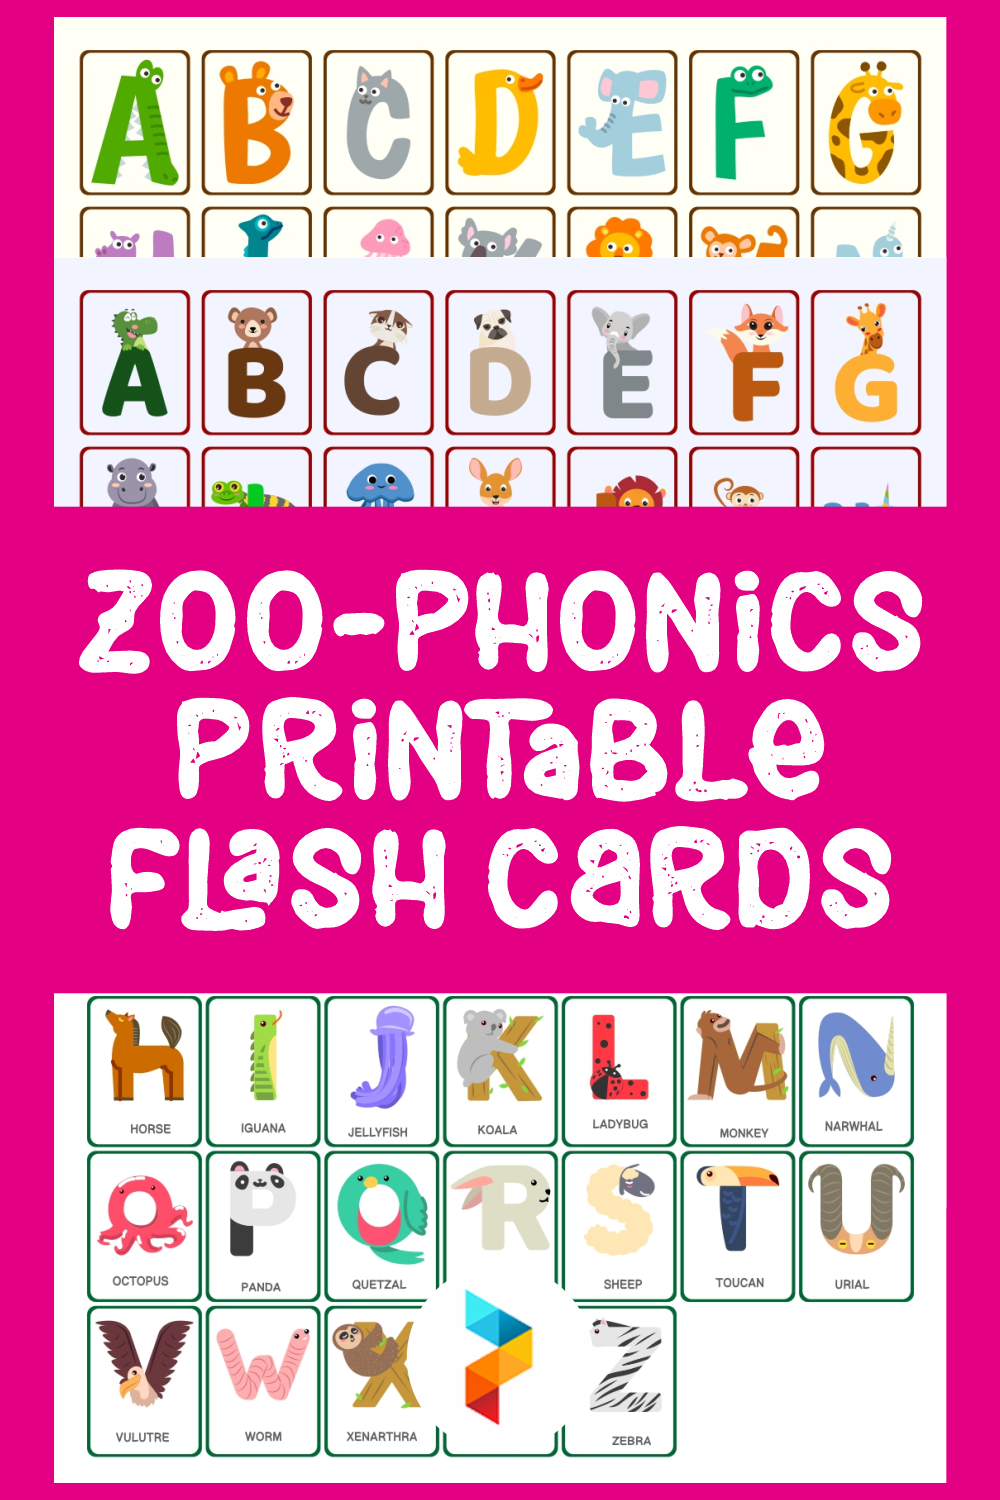 10 Best Zoo phonics Printable Flash Cards Printablee